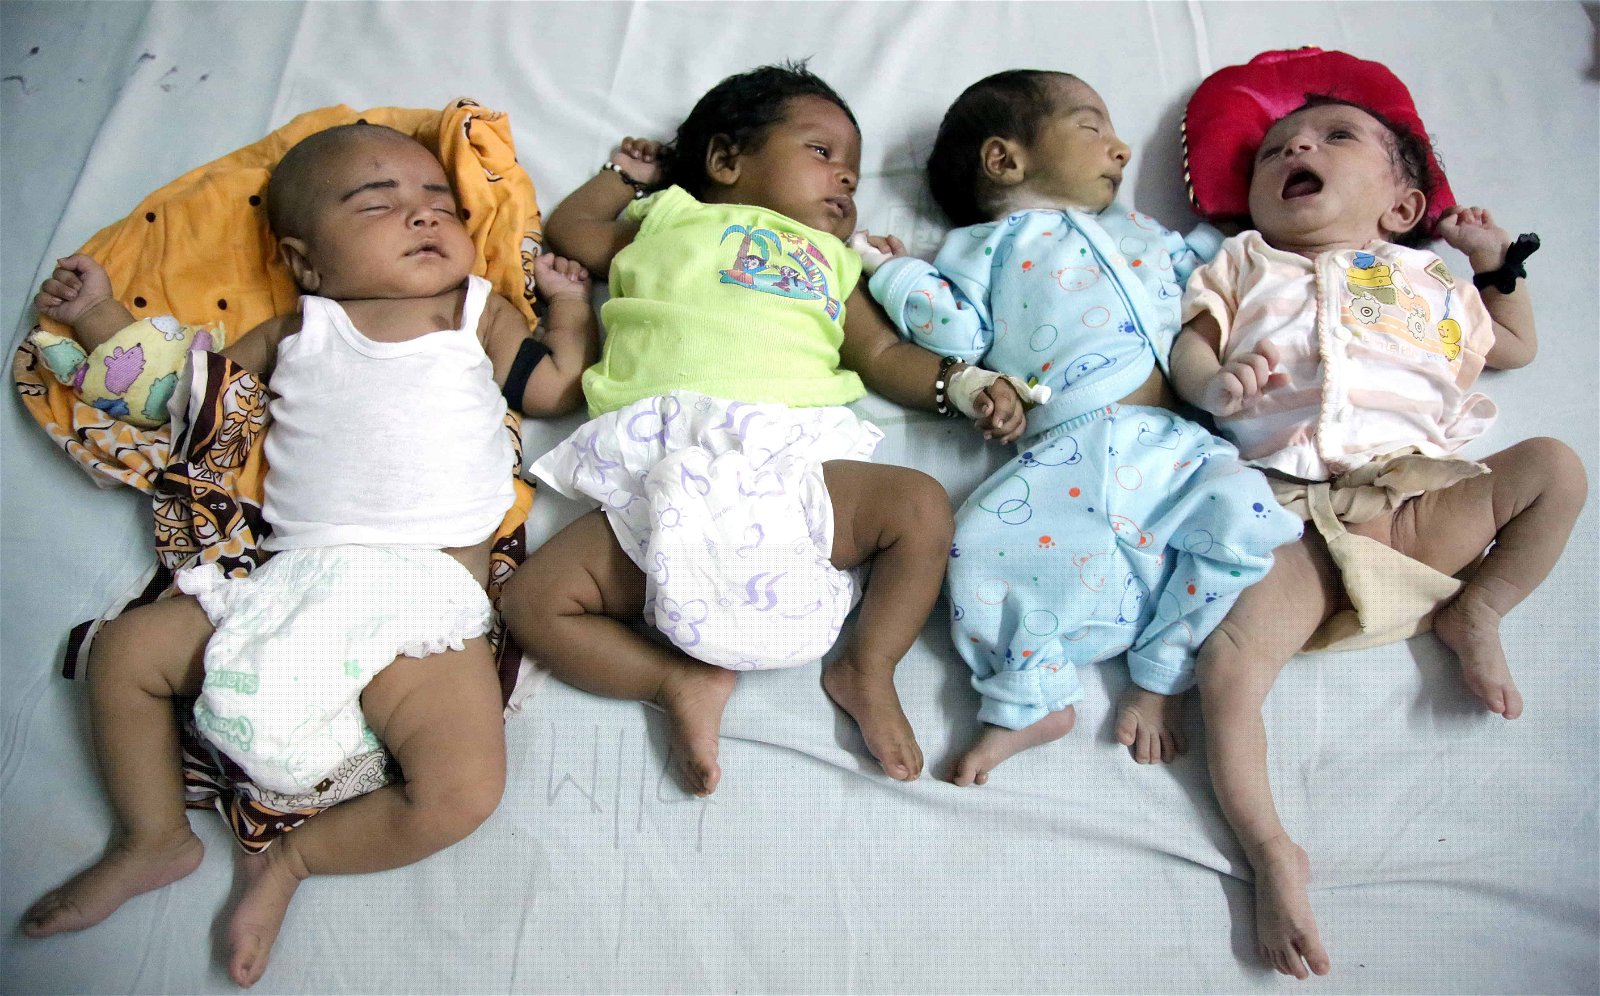 Vier baby's liggen op een rij naast elkaar in India.